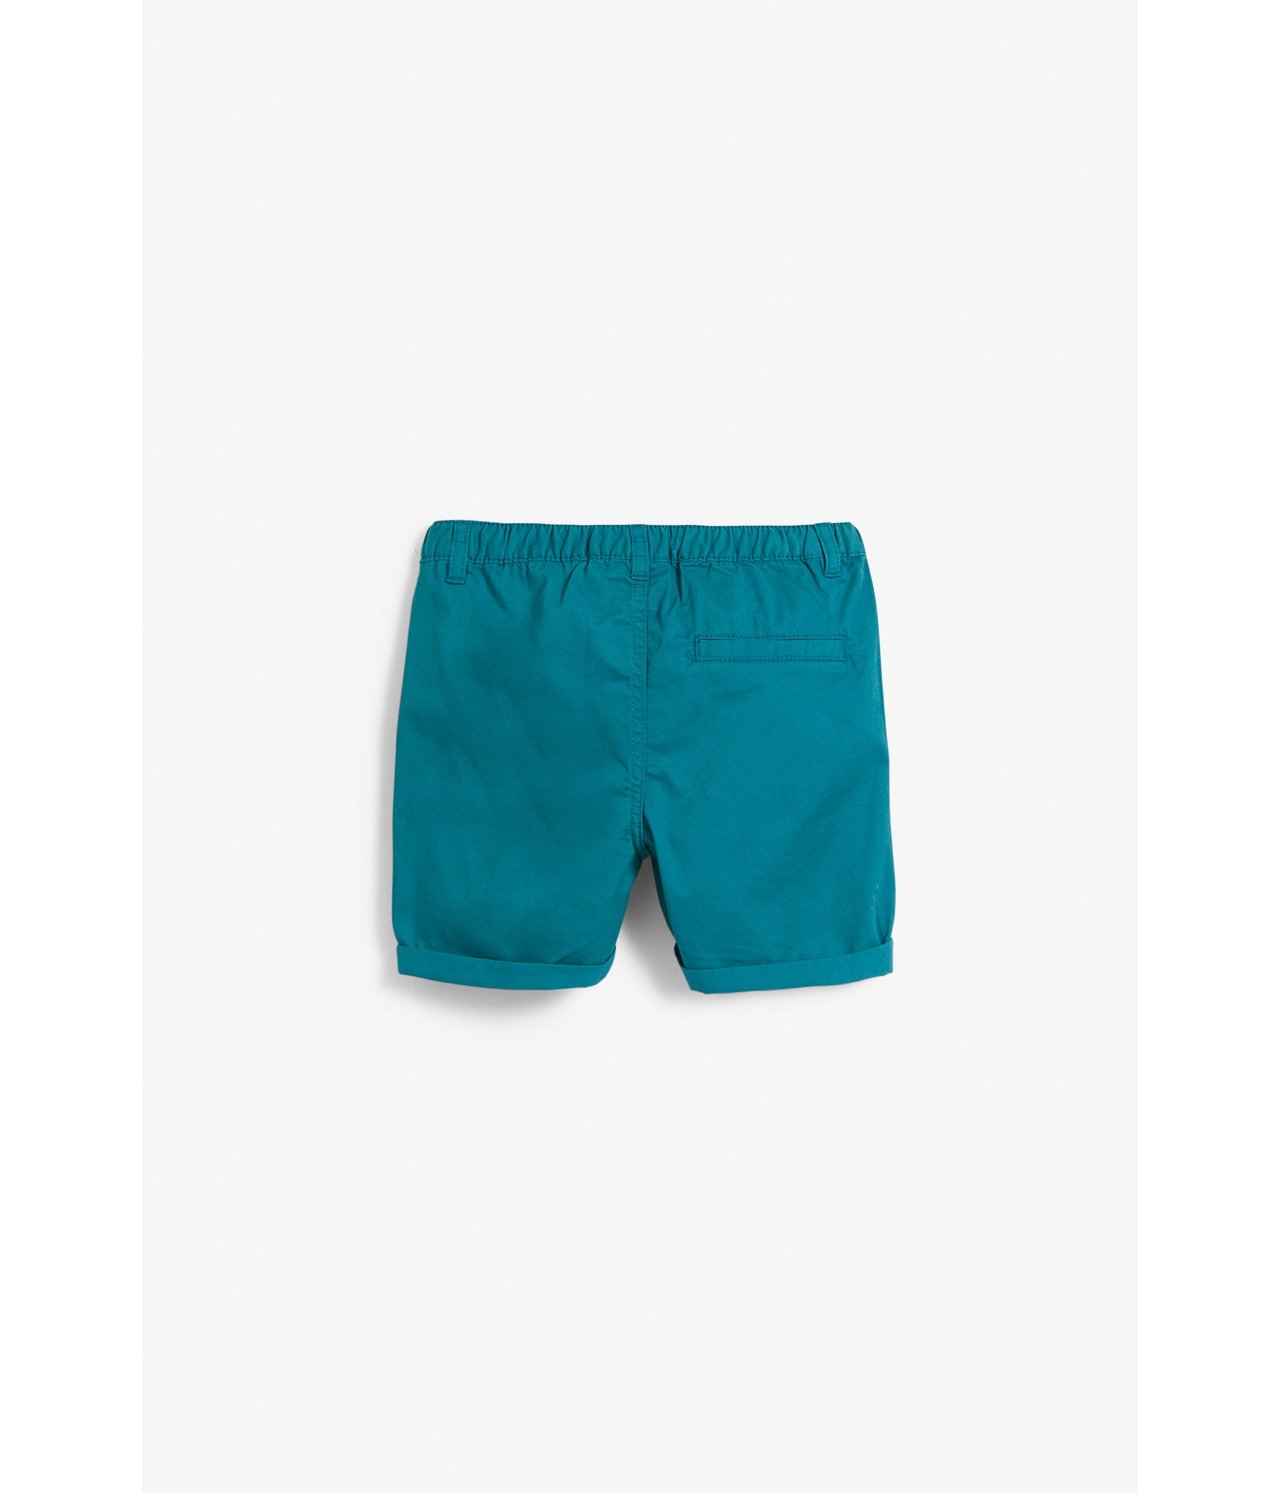 Vevd shorts Grønn - null - 5